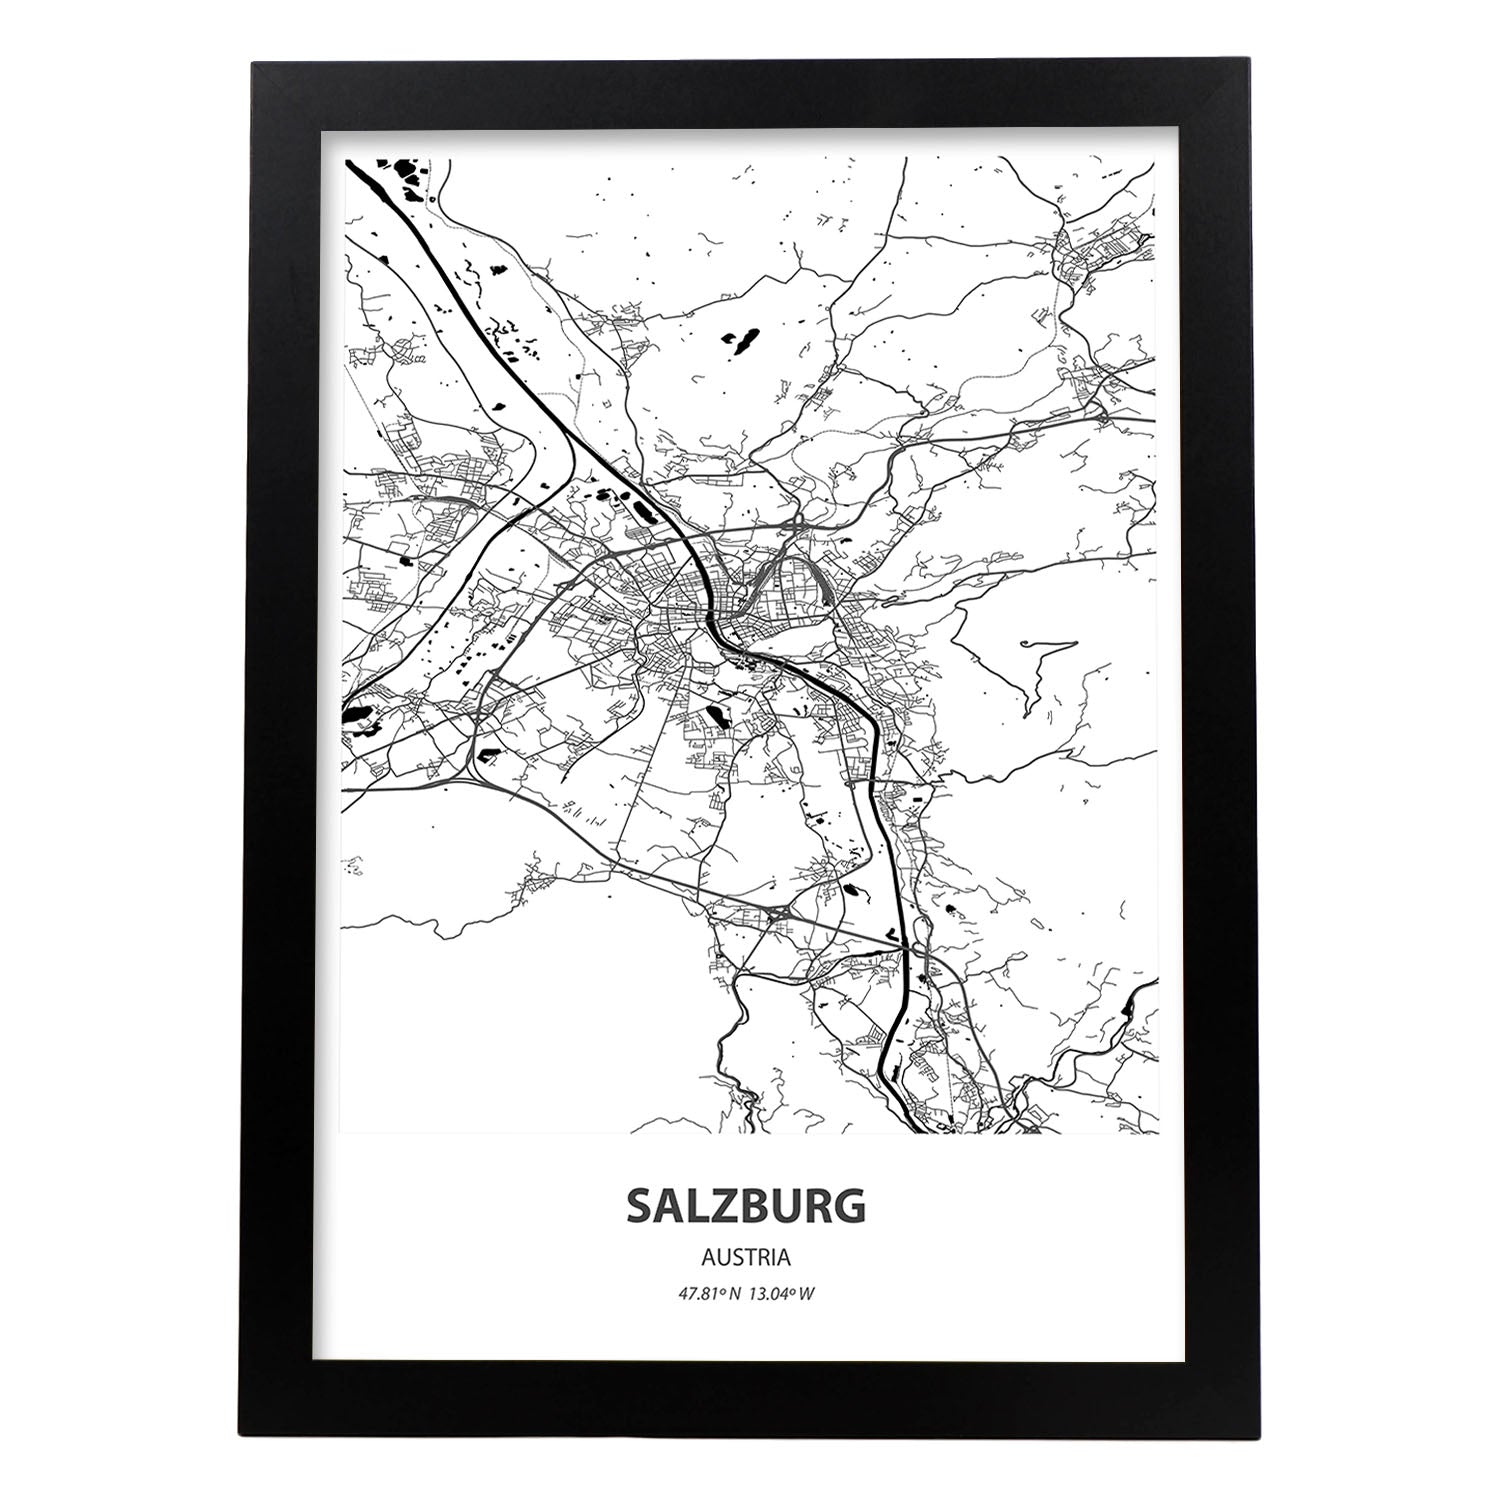 Poster con mapa de Salzburg - Austria. Láminas de ciudades de Europa con mares y ríos en color negro.-Artwork-Nacnic-A3-Marco Negro-Nacnic Estudio SL